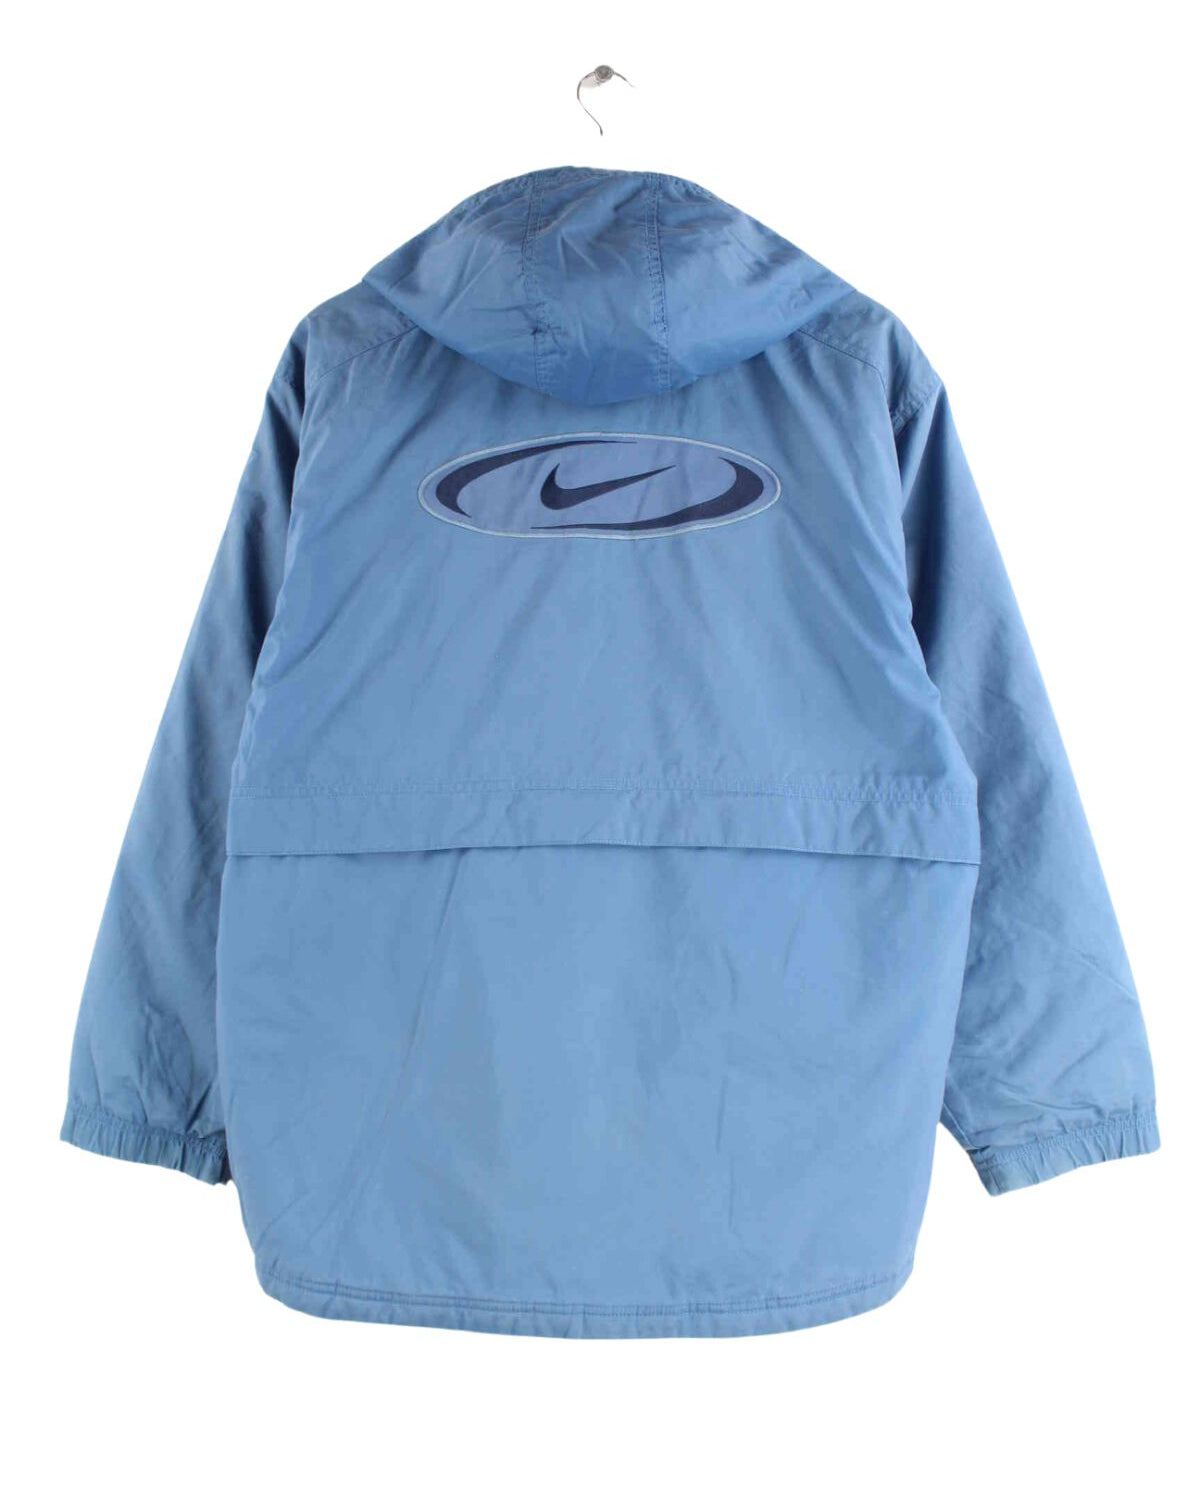 Nike 90s Vintage Center Swoosh Embroidered Jacke Blau L (back image)